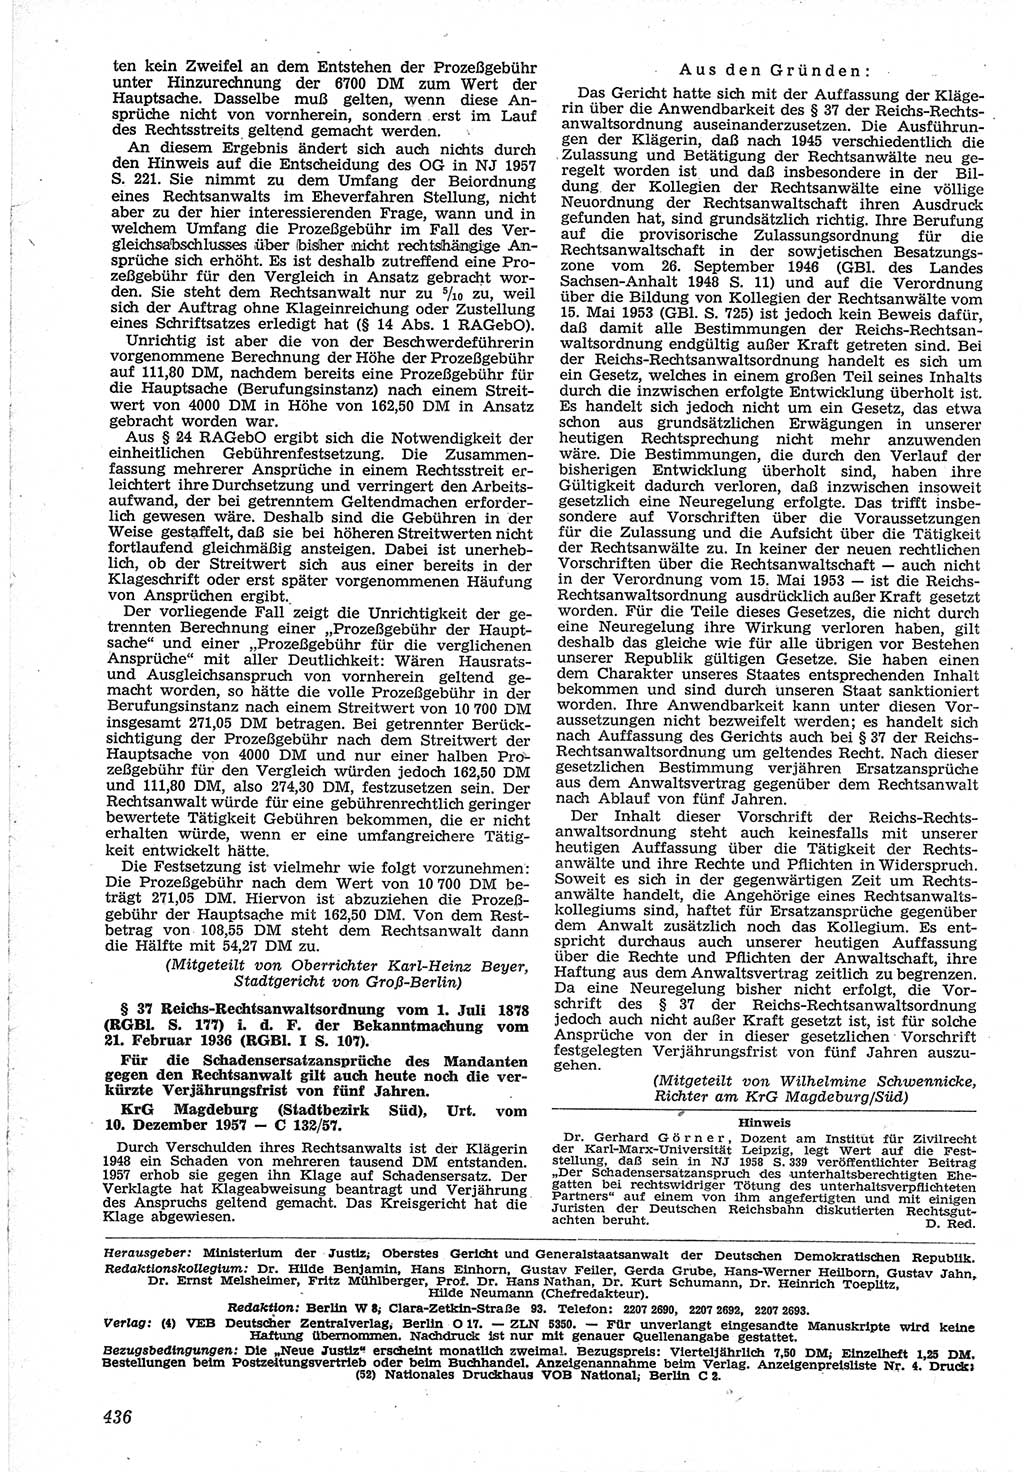 Neue Justiz (NJ), Zeitschrift für Recht und Rechtswissenschaft [Deutsche Demokratische Republik (DDR)], 12. Jahrgang 1958, Seite 436 (NJ DDR 1958, S. 436)